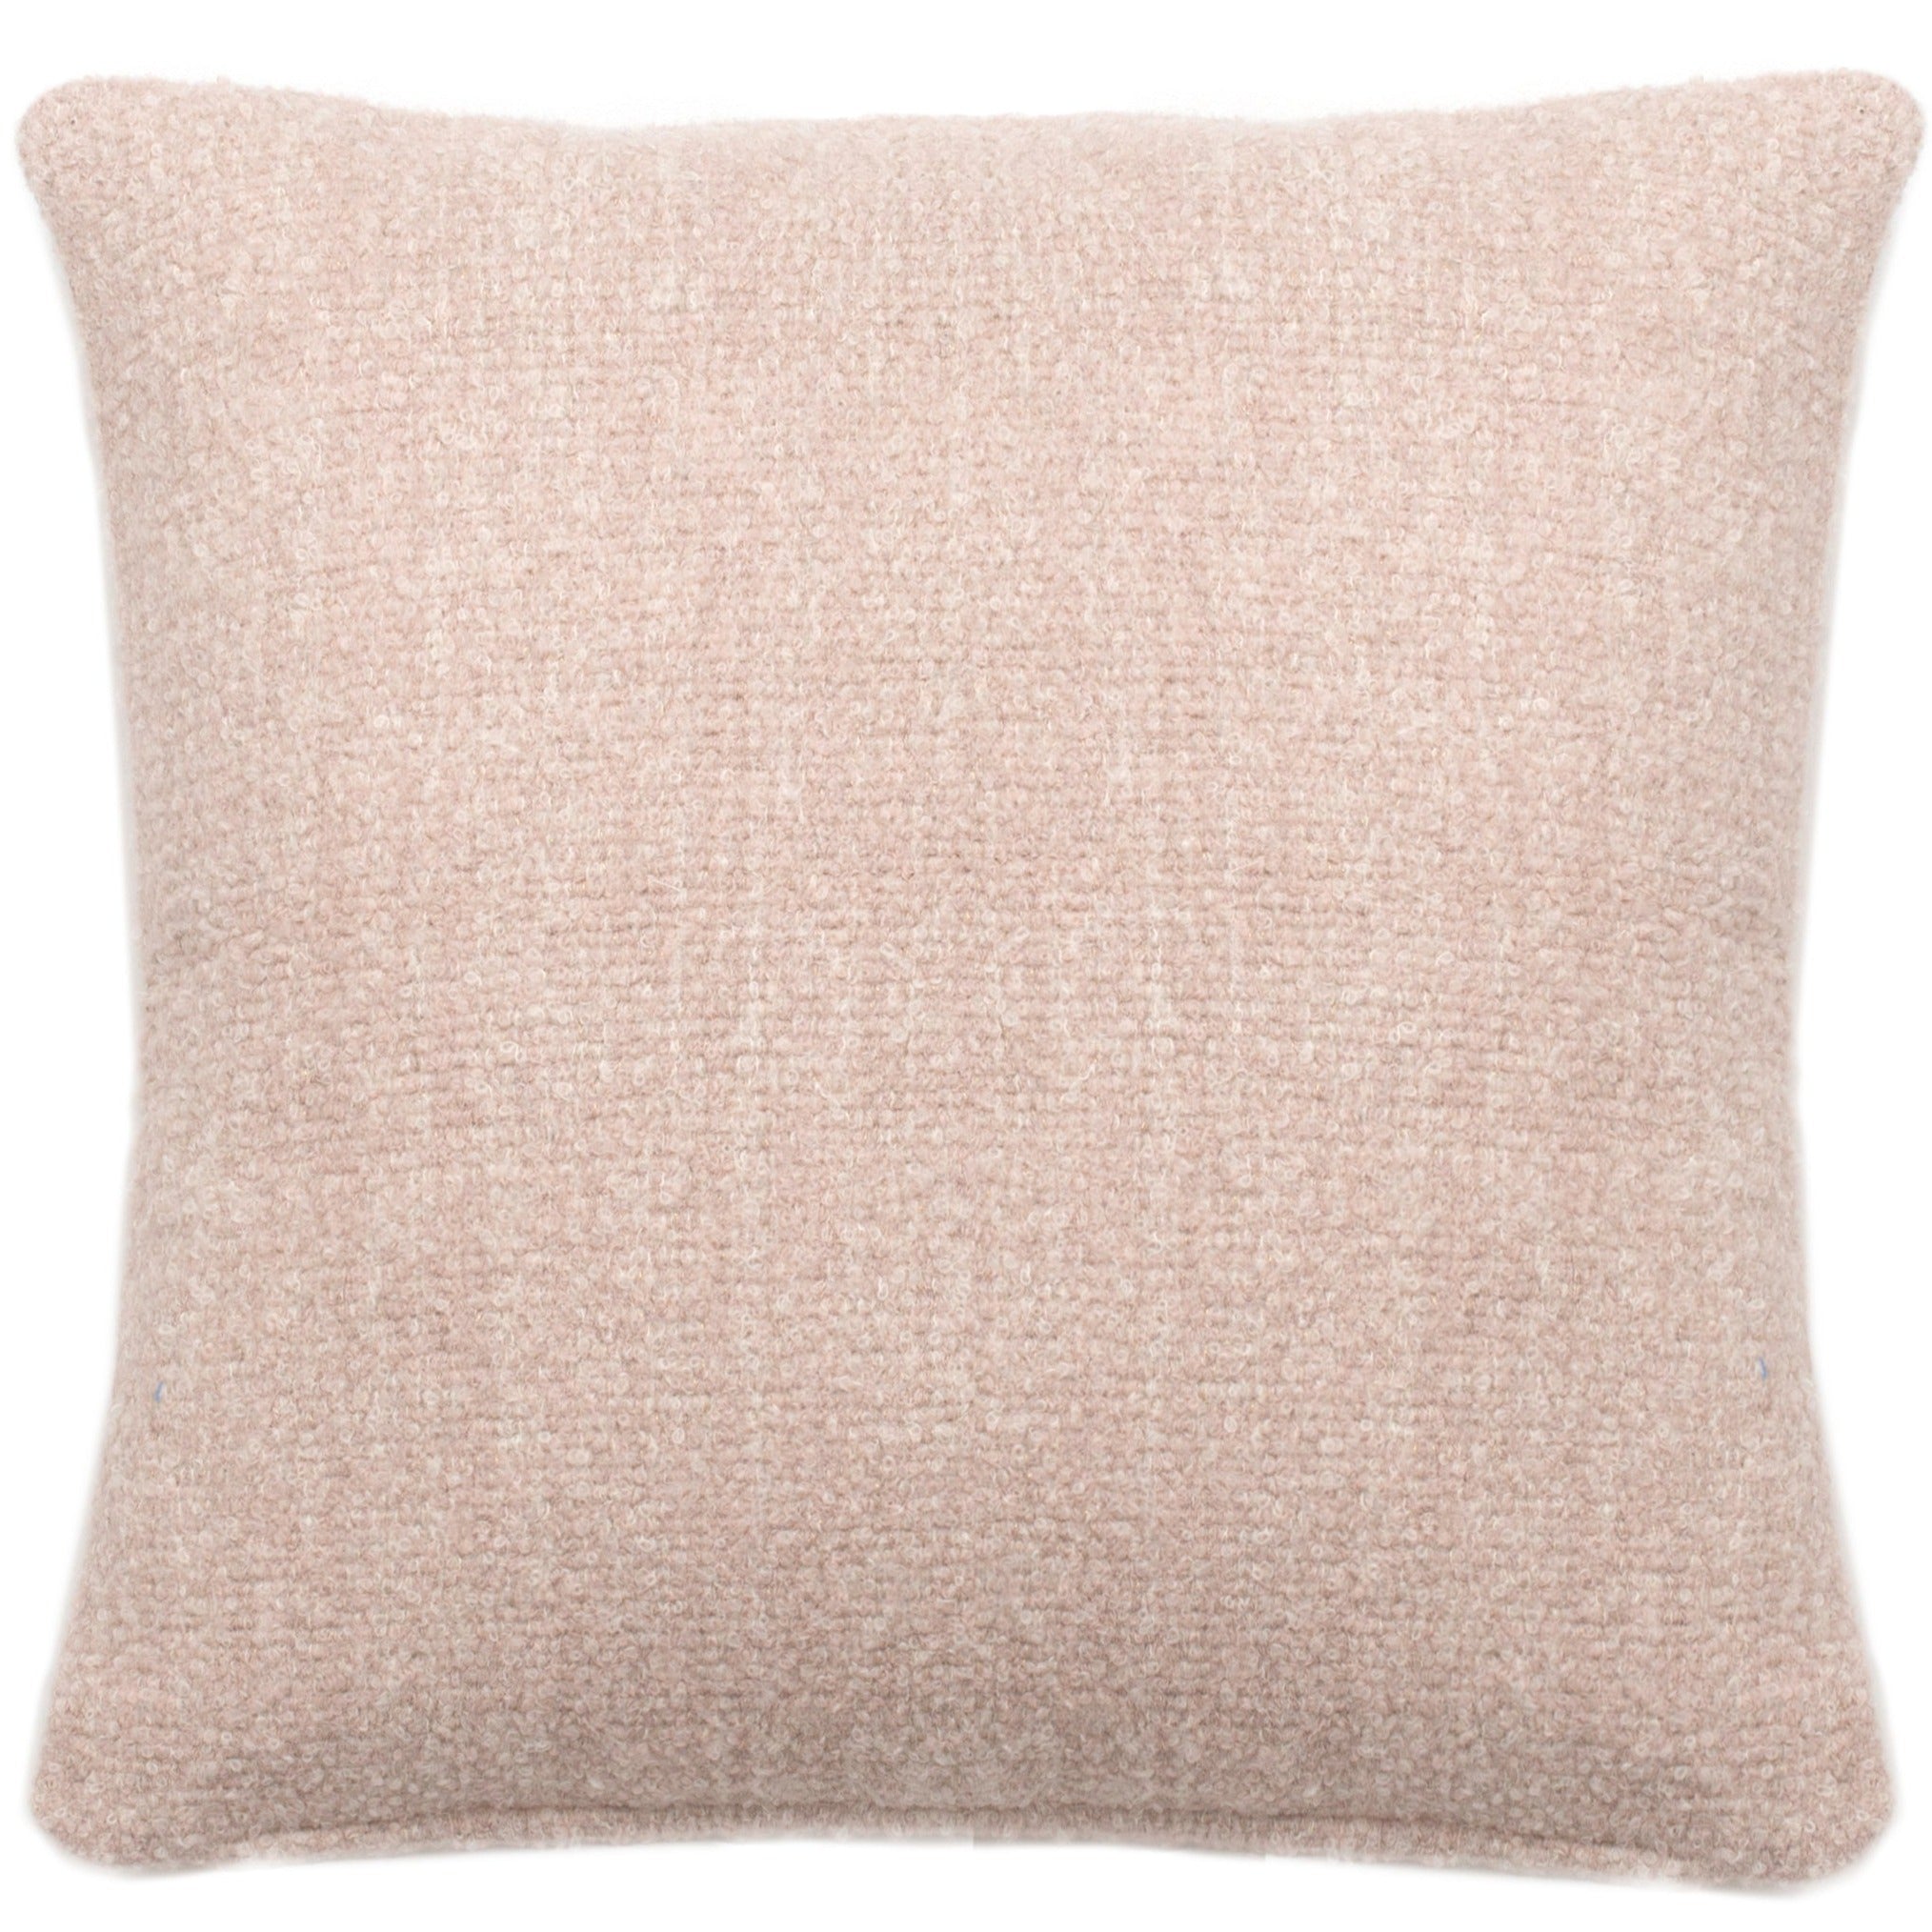 Glam Bouclé Pillow